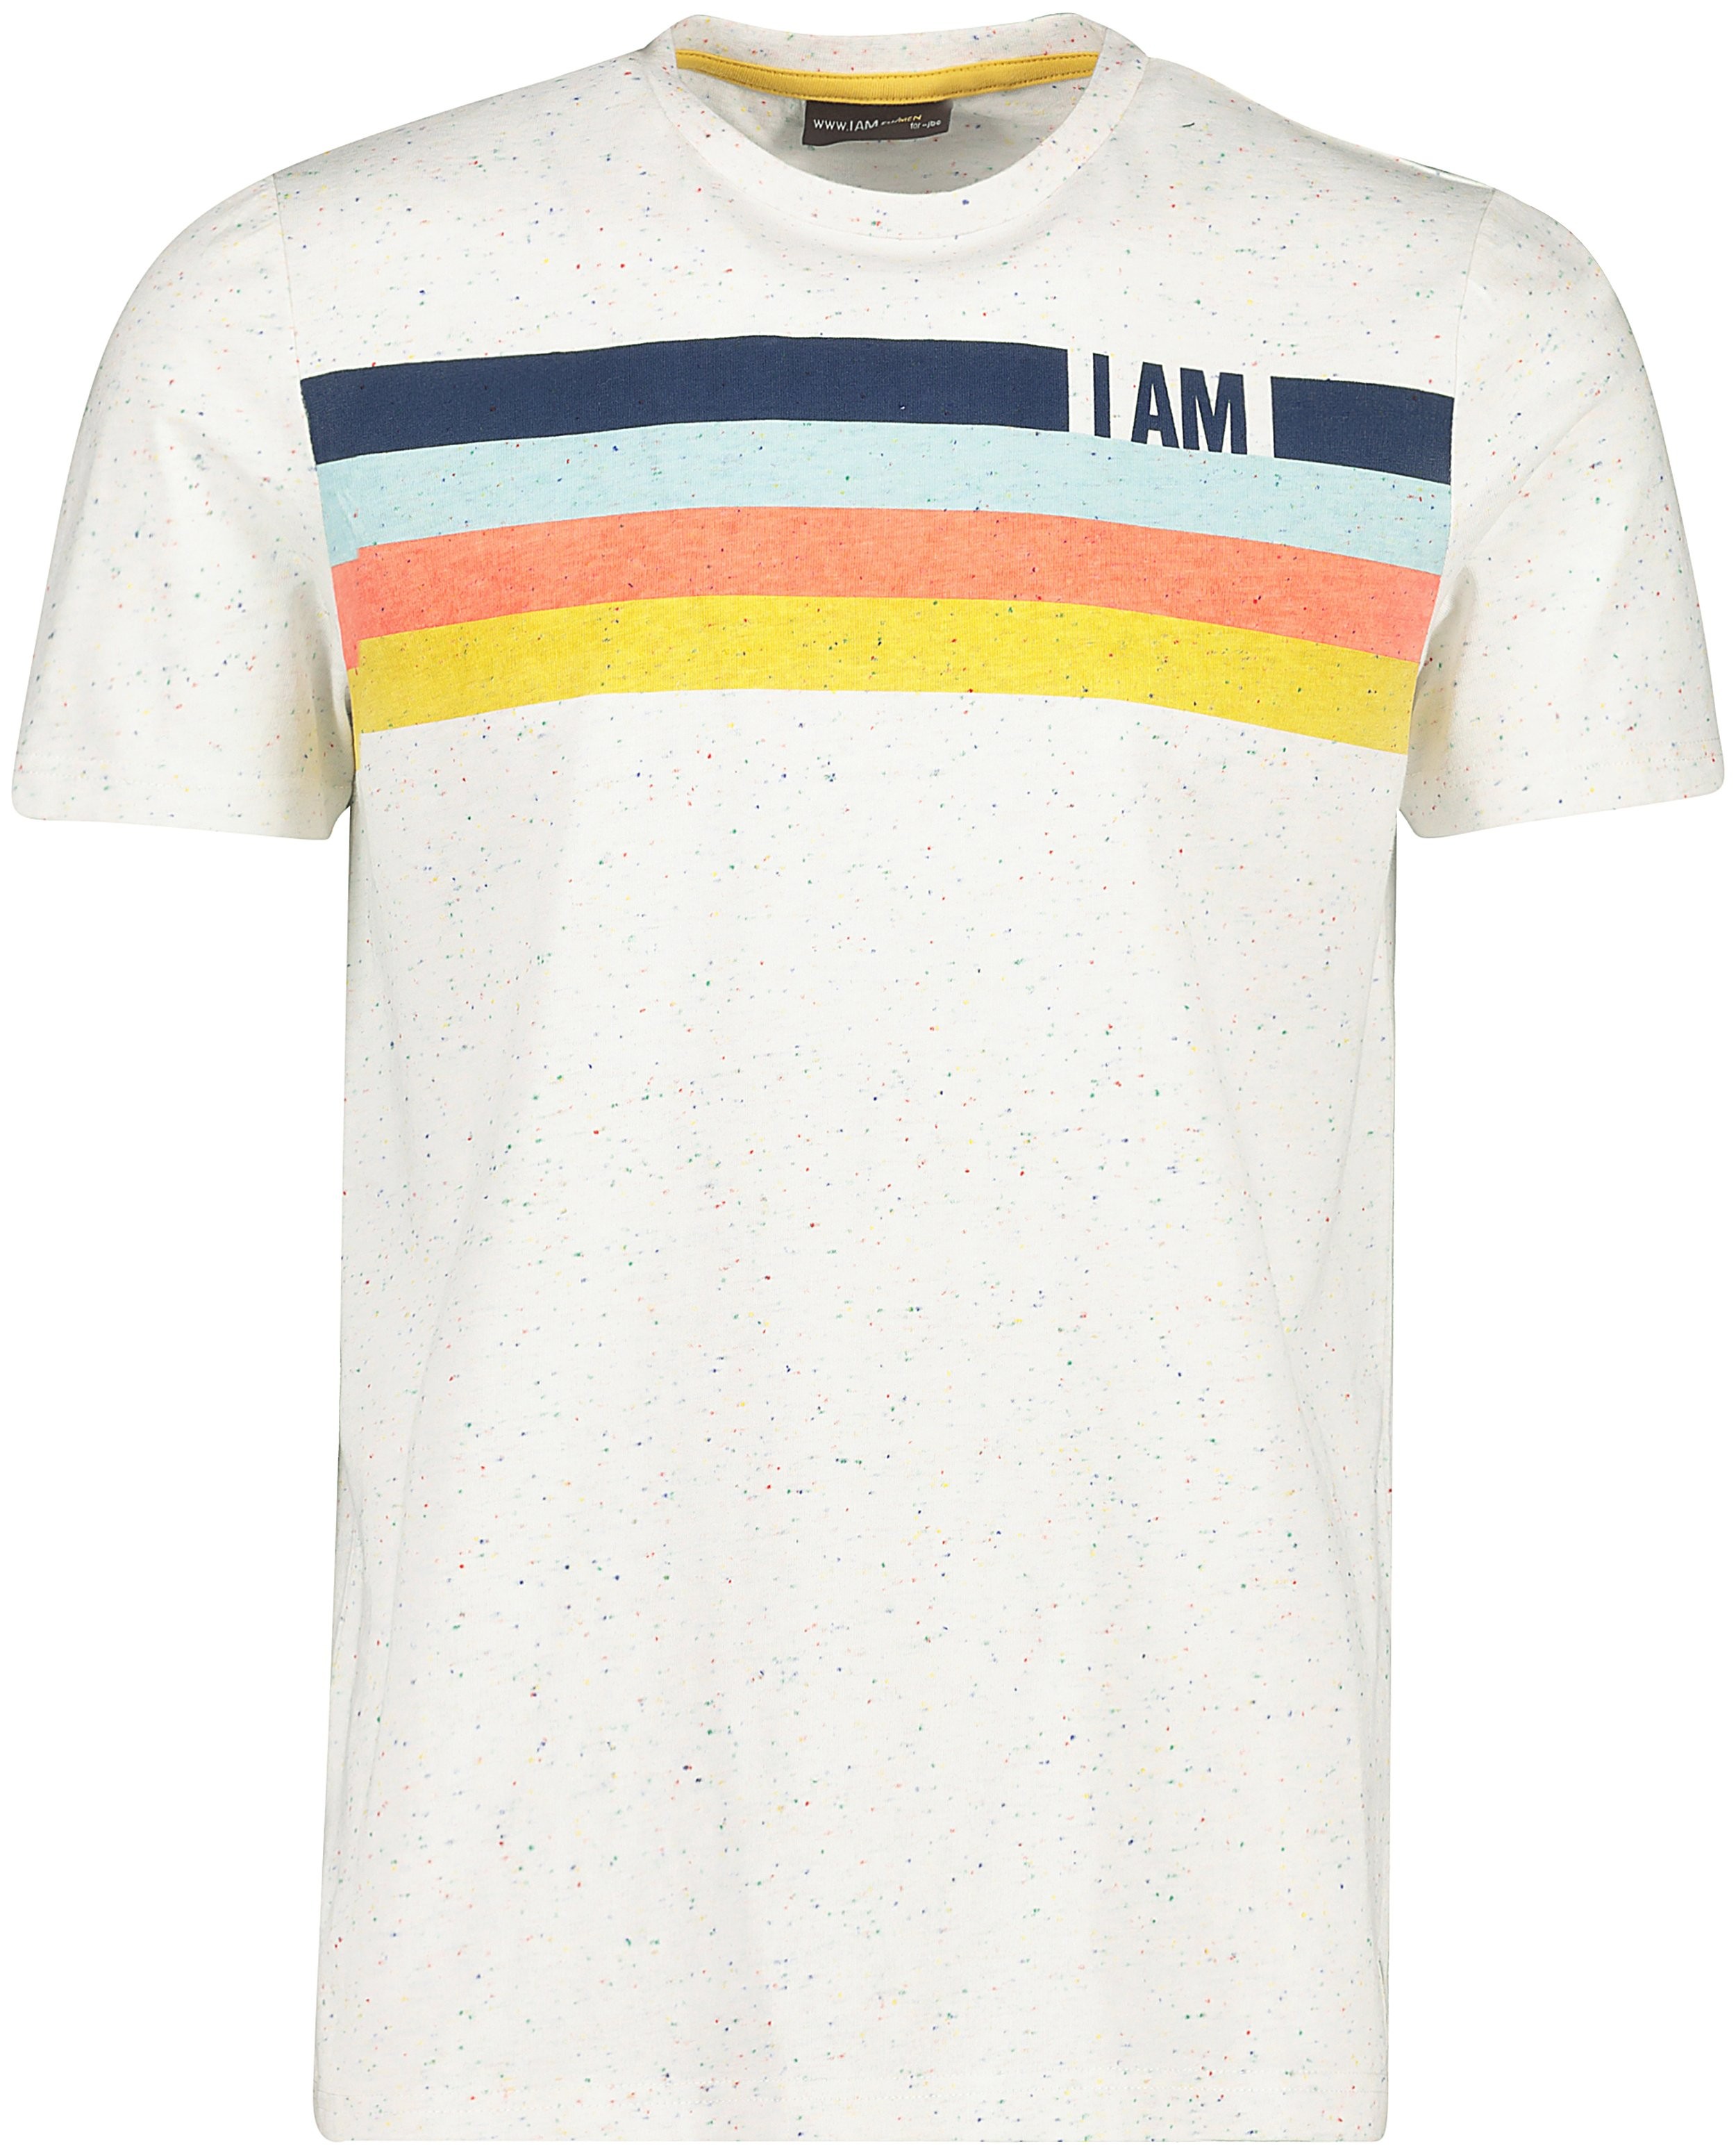 T-shirt en coton bio I AM - rayé - I AM